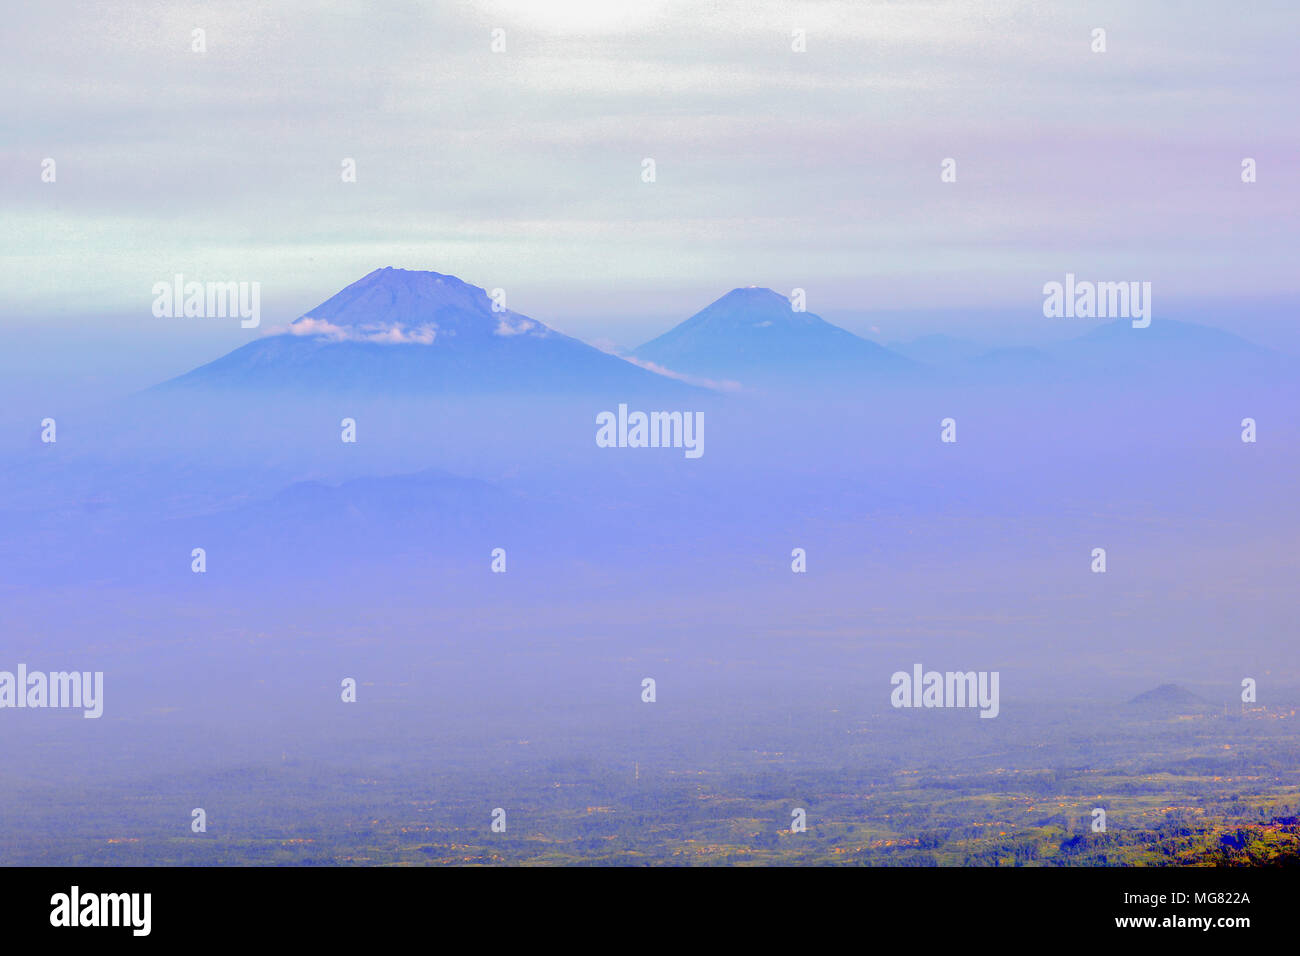 Mount Merbabu (Indonesisch: Gunung Merbabu) ist ein schlafendes Stratovulkan in Zentral-java Provinz auf der indonesischen Insel Java. Stockfoto